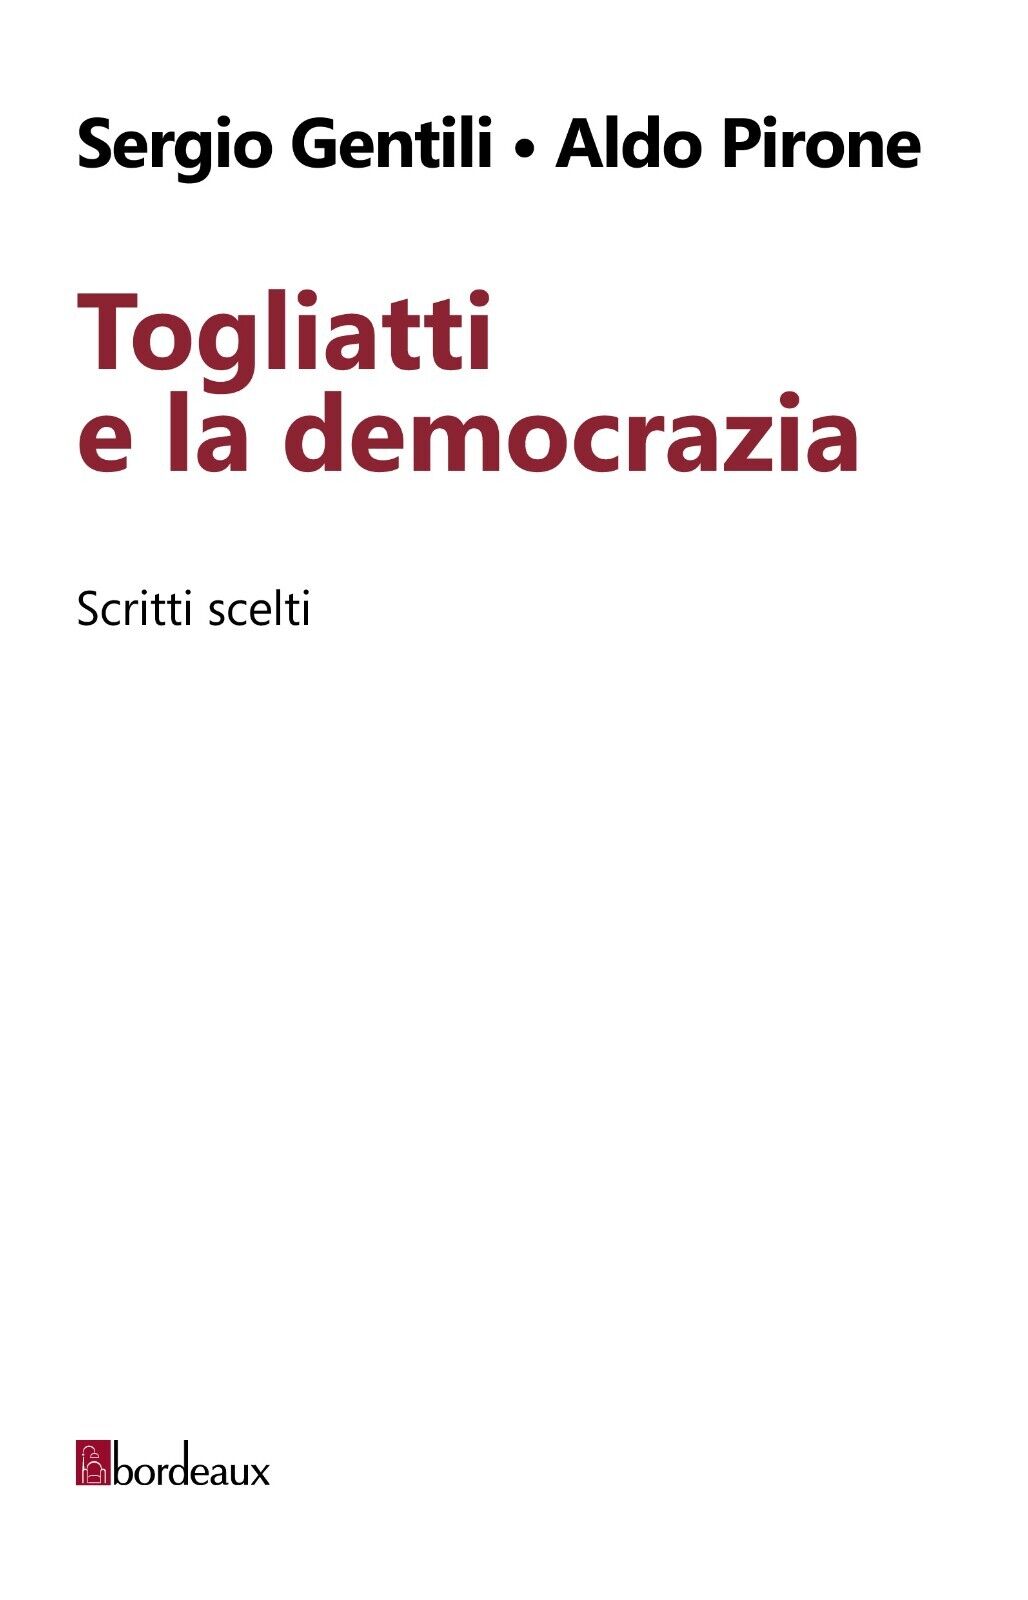 Togliatti e la democrazia. Scritti scelti di Sergio Gentili, Aldo Pirone, 2014